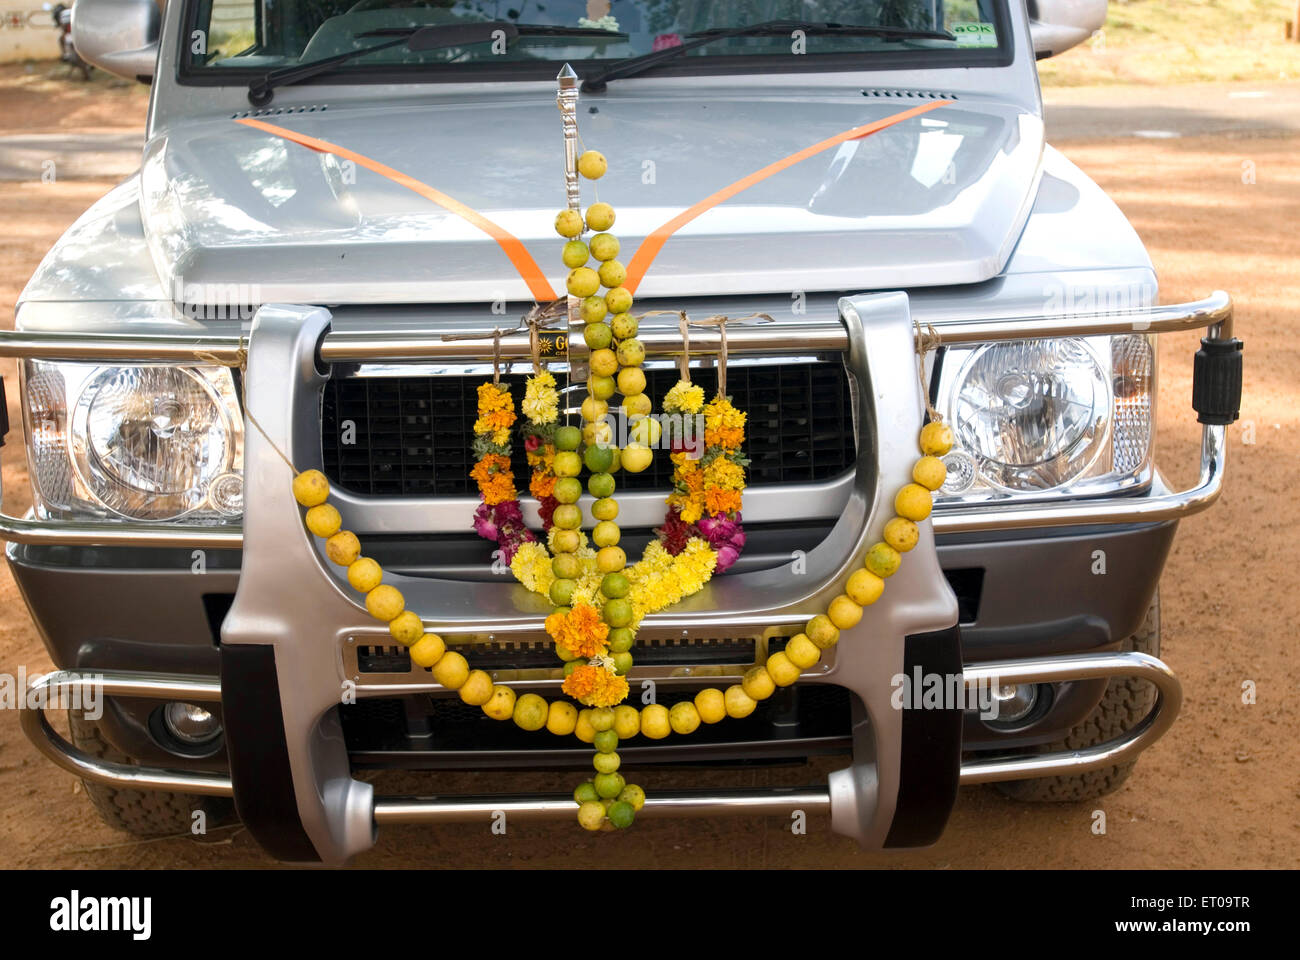 Neues Auto Zitrone und Blume Girlande, Kannathal Tempel, Nattarasankottai, Tamil Nadu, Indien, Asien Stockfoto